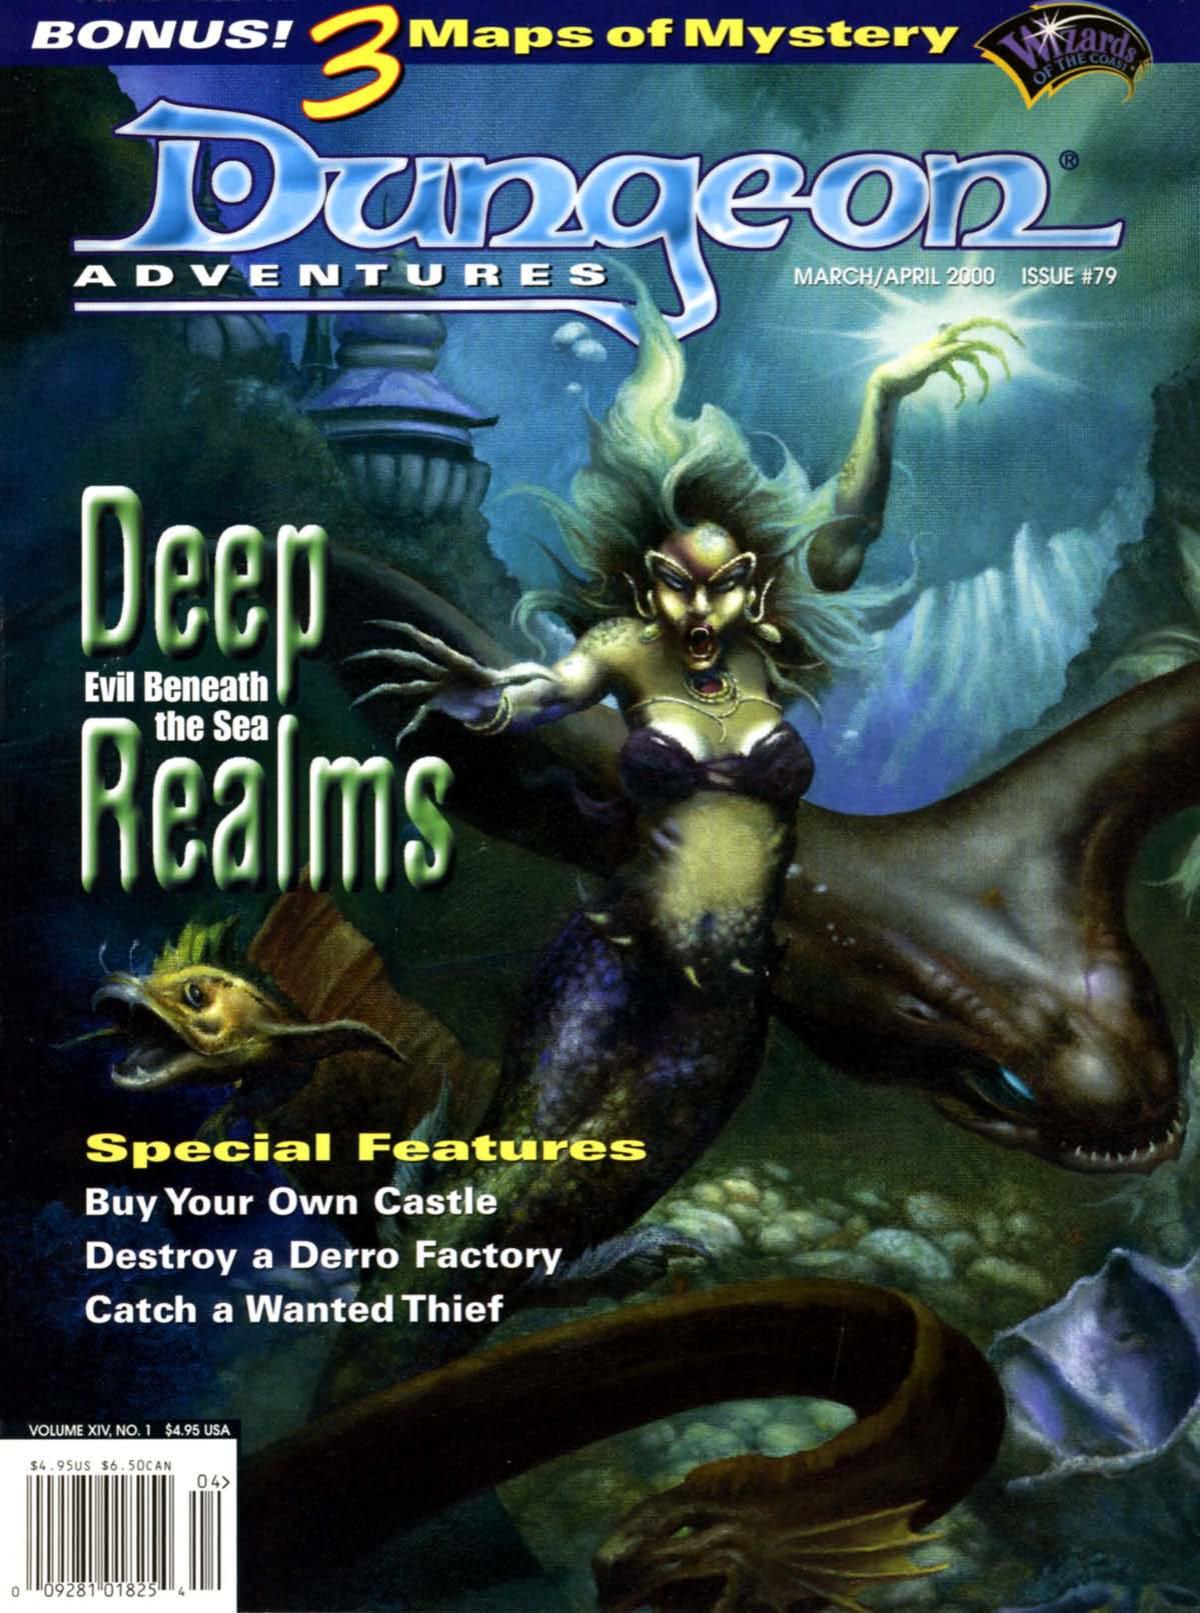 Dungeon Magazine 079